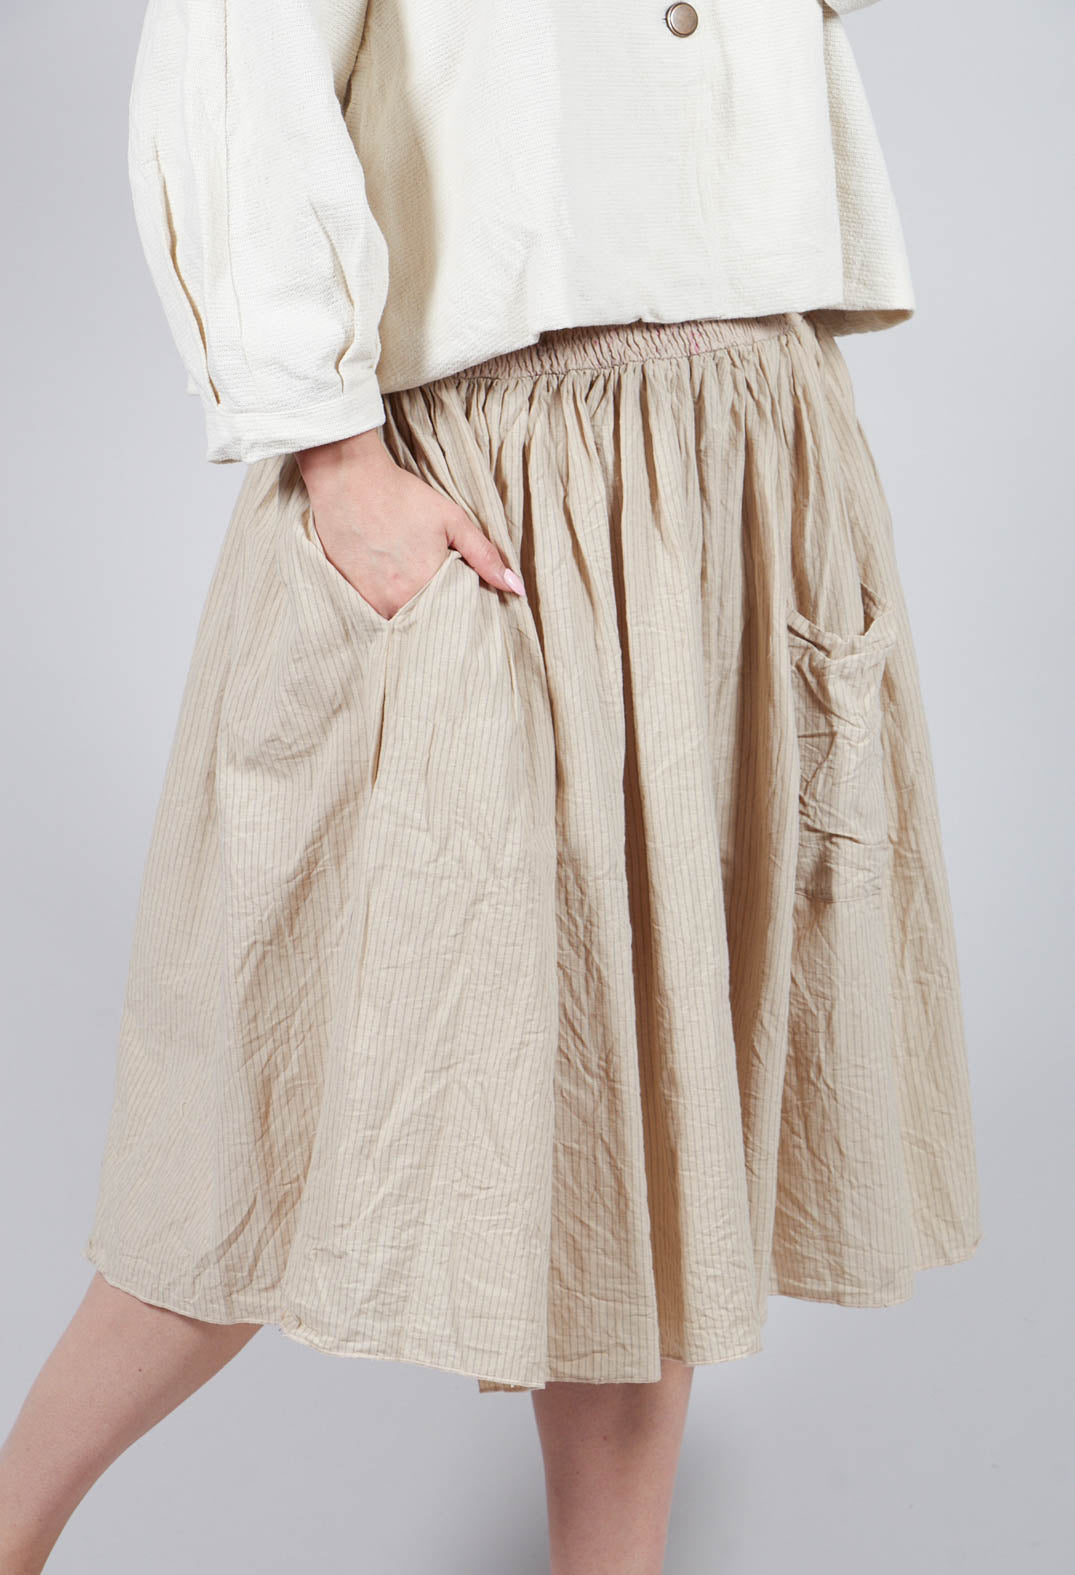 Framboise Skirt in Striped Linen